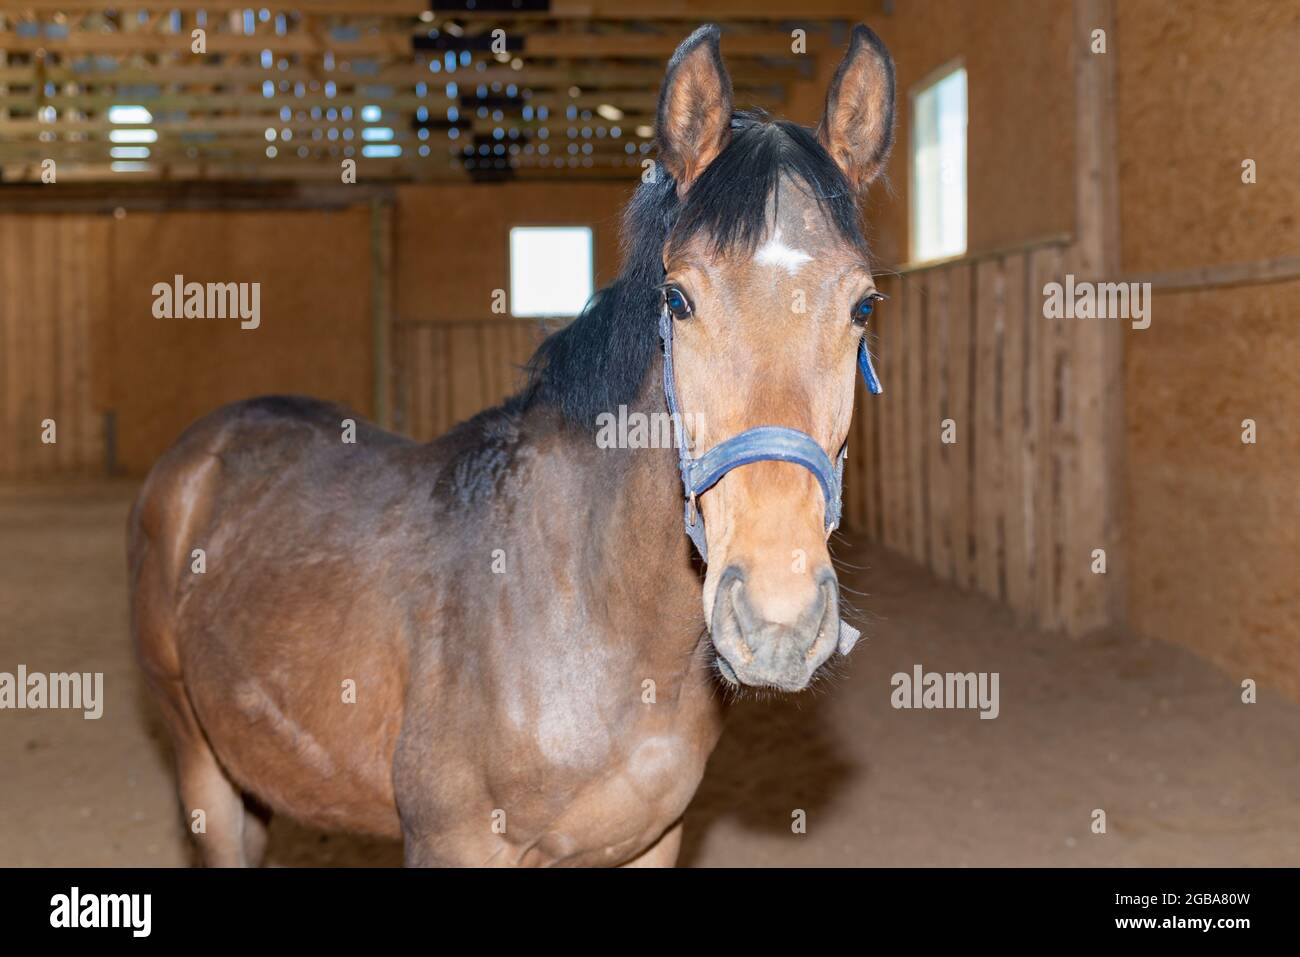 Bellissimo stupefacente, sano cavallo di castagno marrone al posto di equitazione al coperto. Ritratto di un giovane cavallo purebred.Closeup. Foto Stock